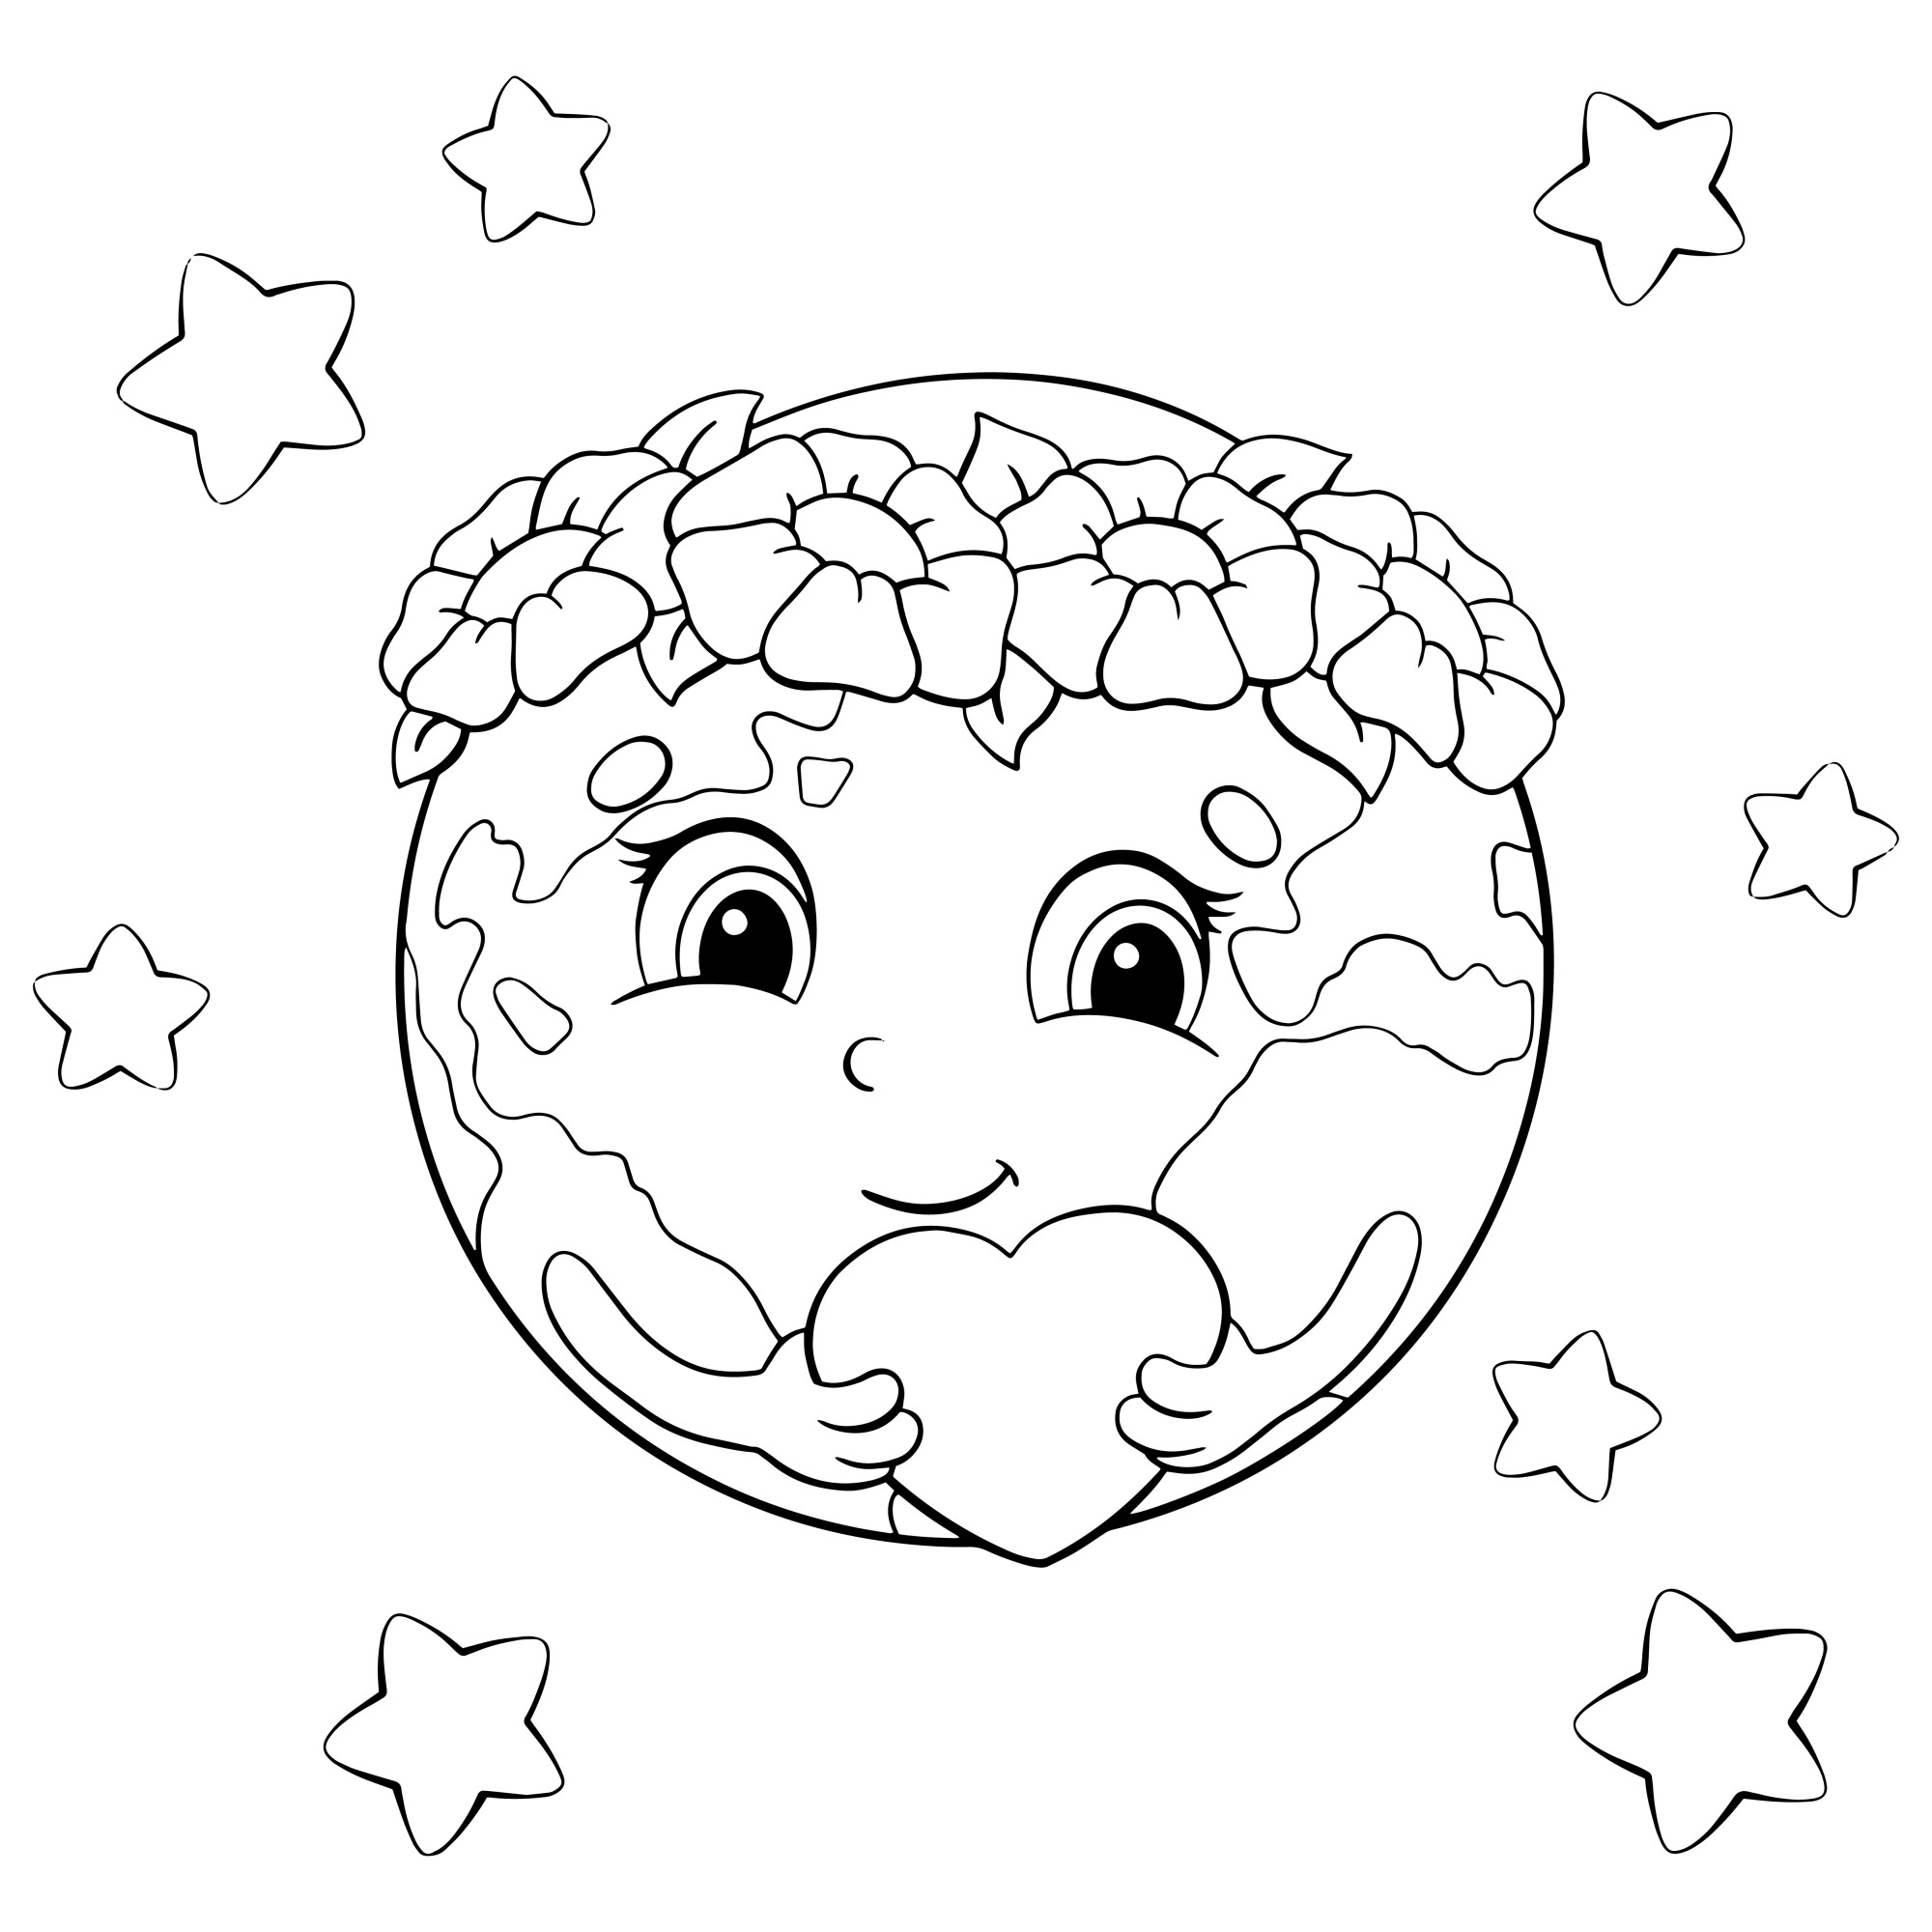 Раскраска для детей: смайлик планета с сердечком